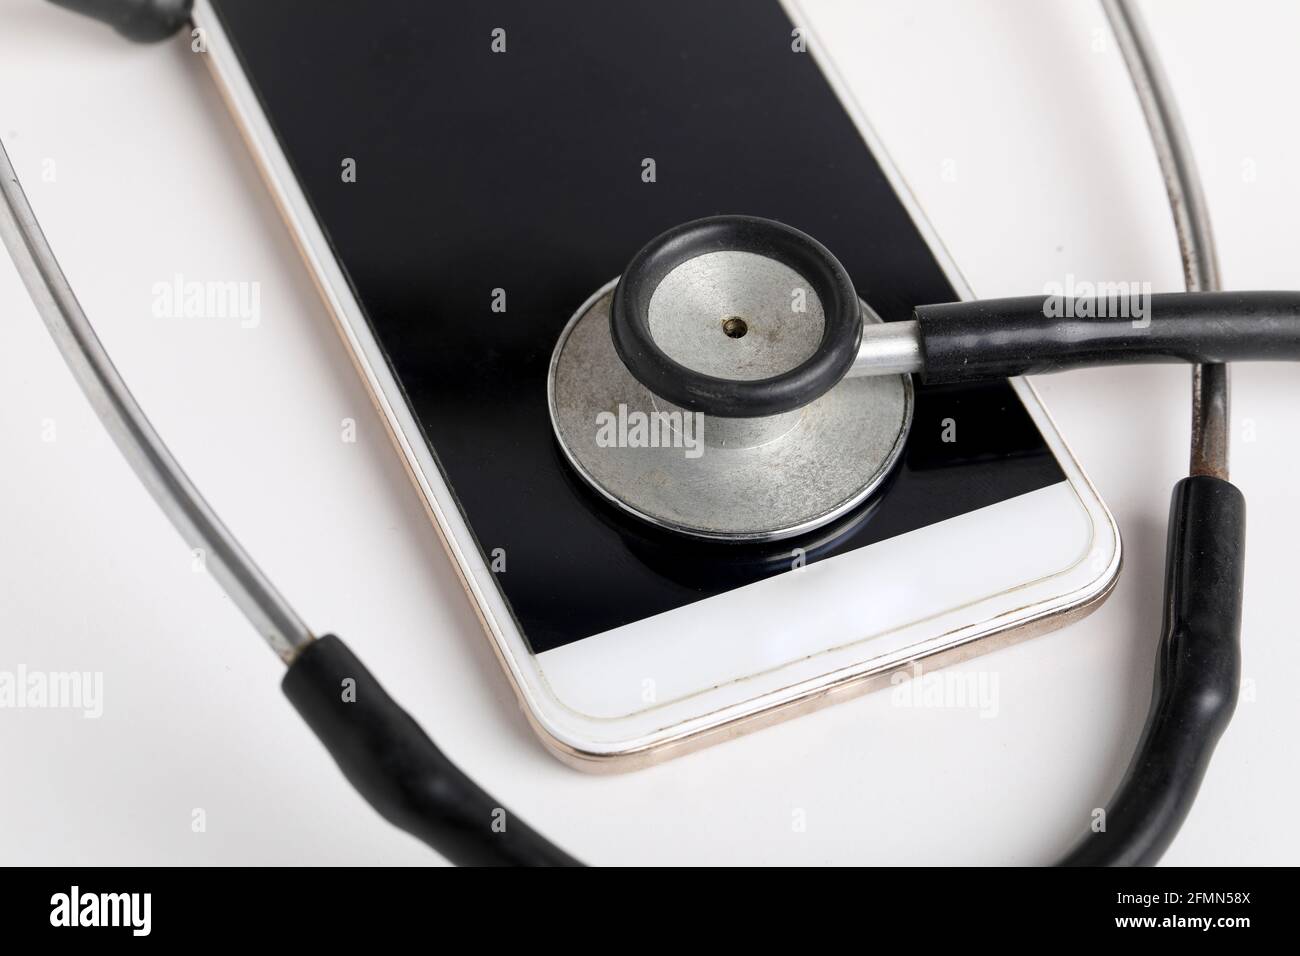 Smartphone e stetoscopio su sfondo bianco. Tecnologia di medicina online (telemedicina). Servizio di diagnostica remota, chat con il medico. Foto Stock